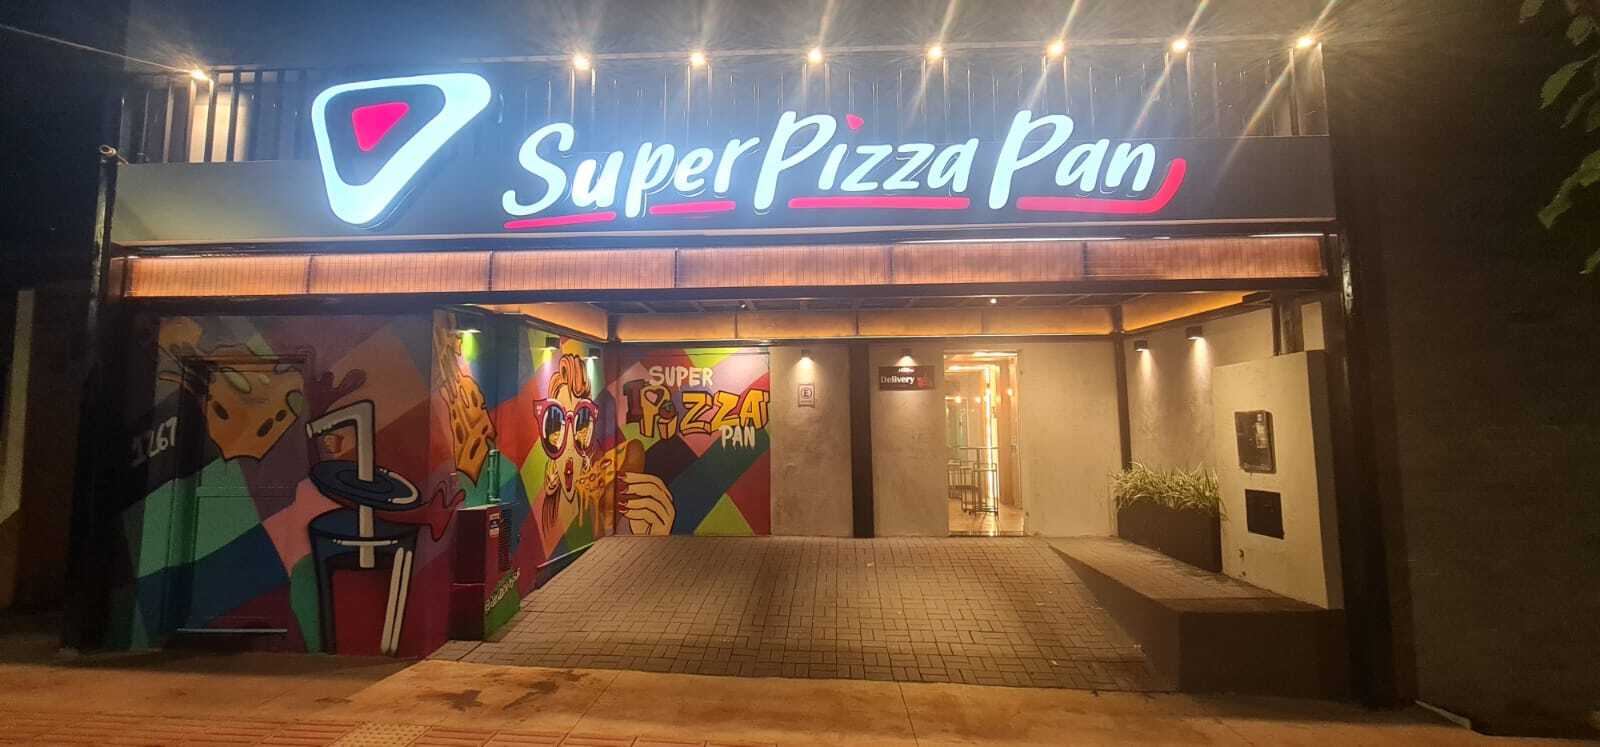 Super Pizza Delivery - Pizzaria em Centro